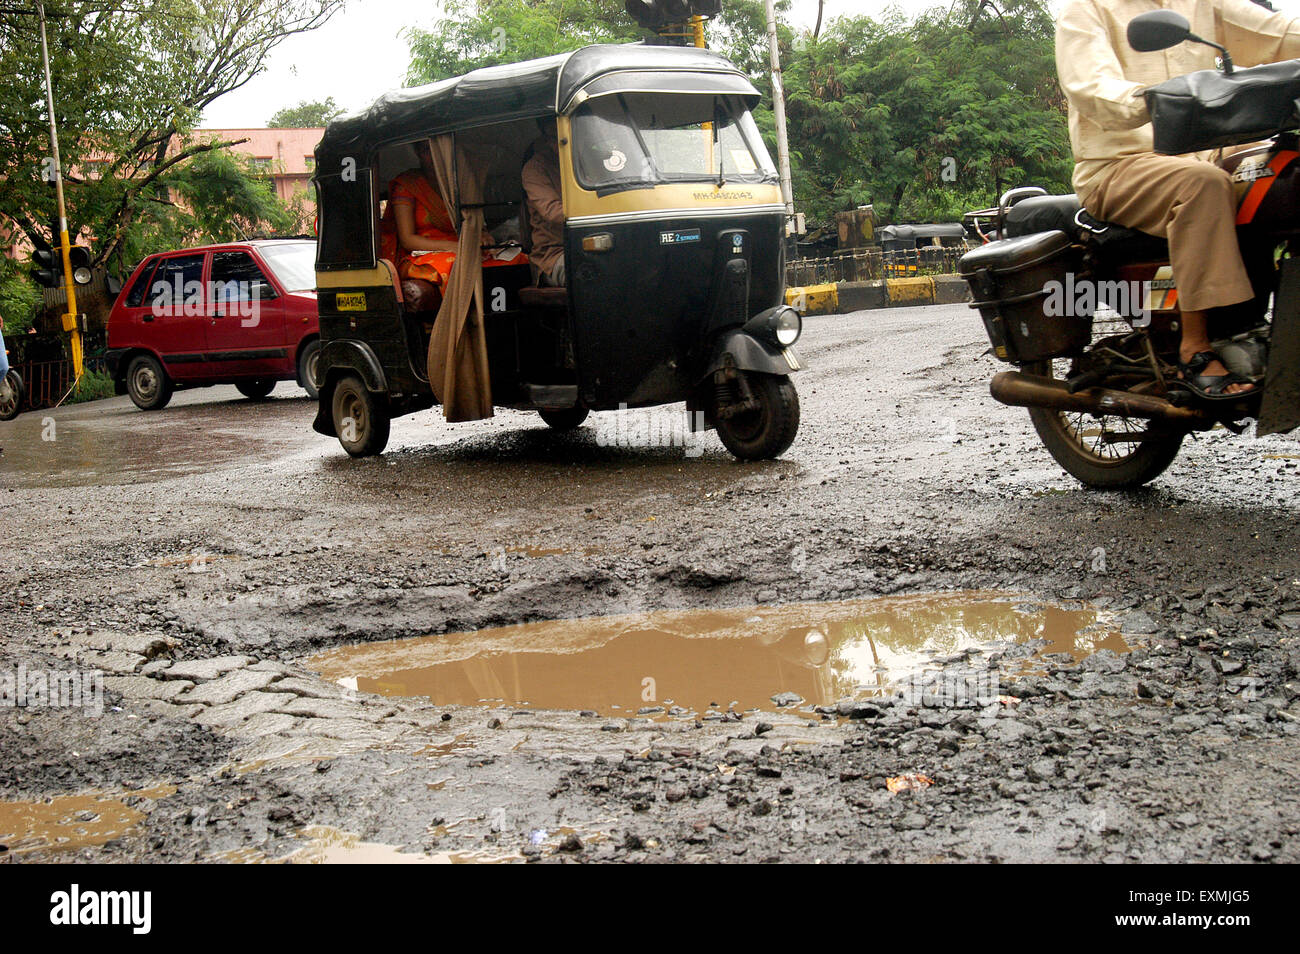 Cars autos and bikes drive on road with pot holes Thane city Bombay Mumbai Maharashtra India Asia Stock Photo